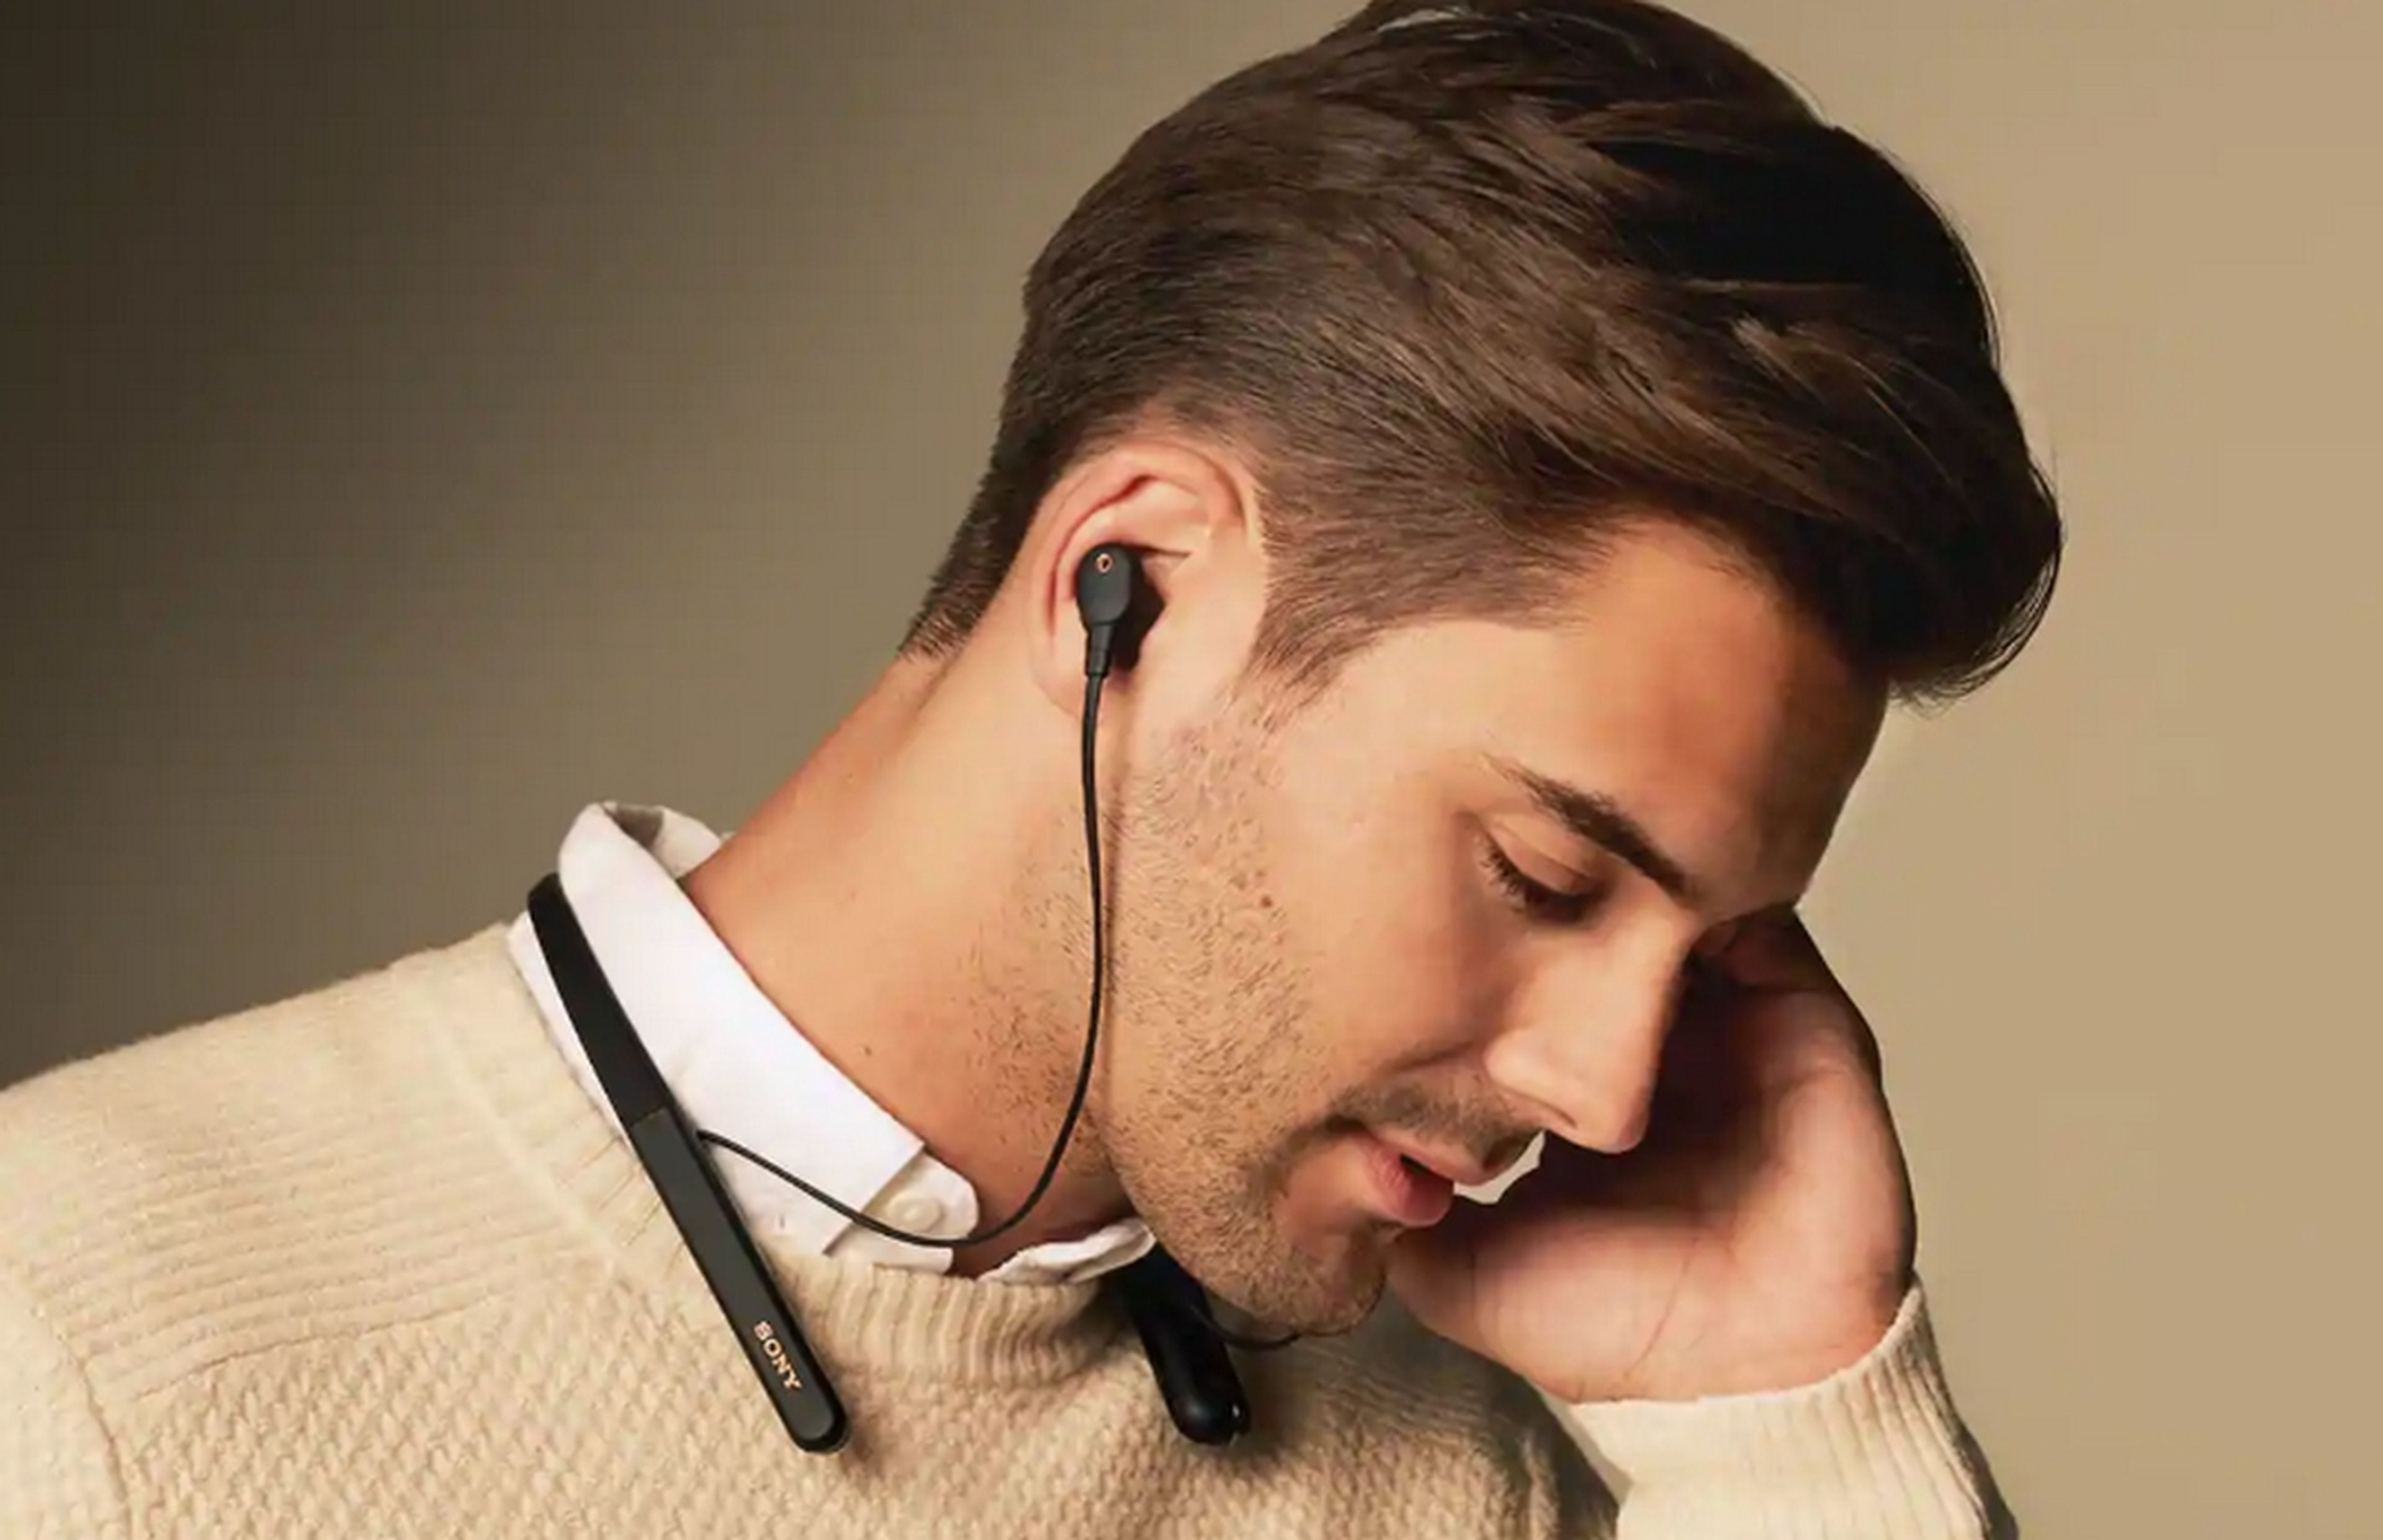 Nuevos auriculares inálámbricos Sony WI-1000XM2 con cancelación de ruído y neckband